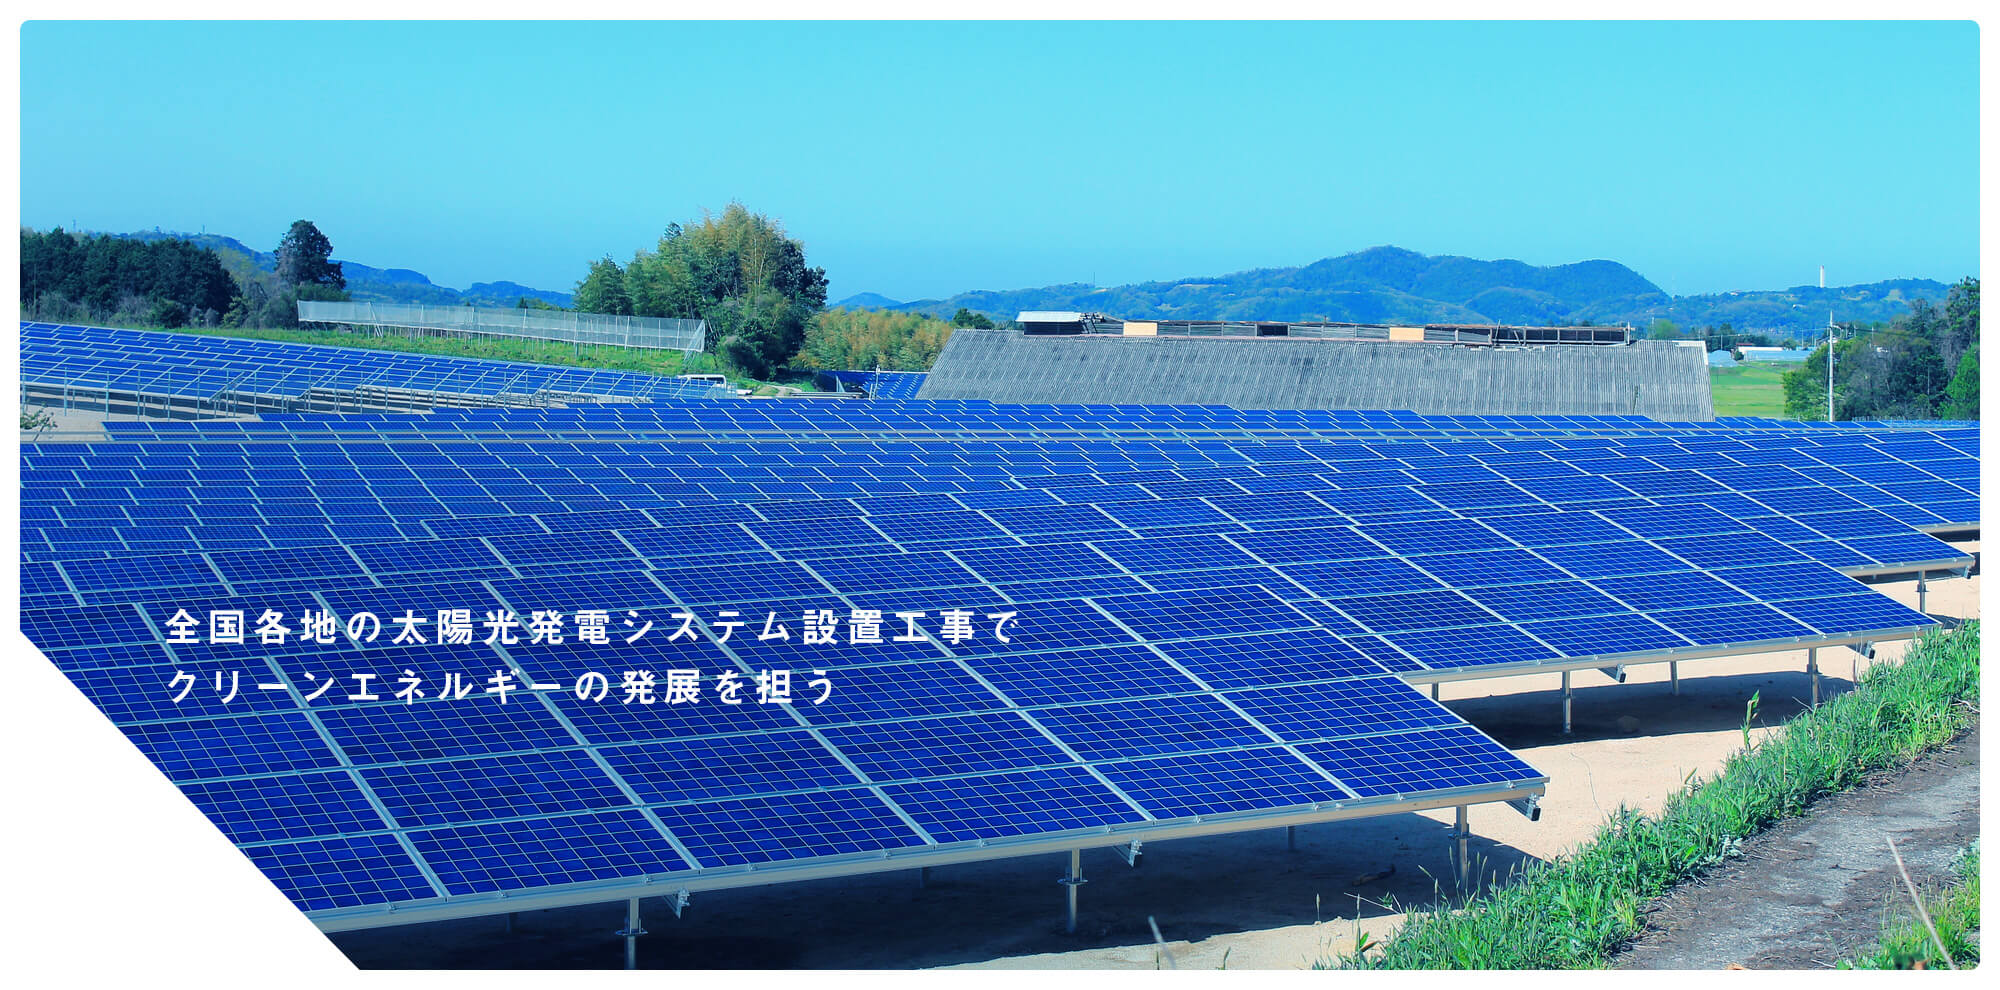 全国各地の太陽光発電システム設置工事でクリーンエネルギーの発展を担う！